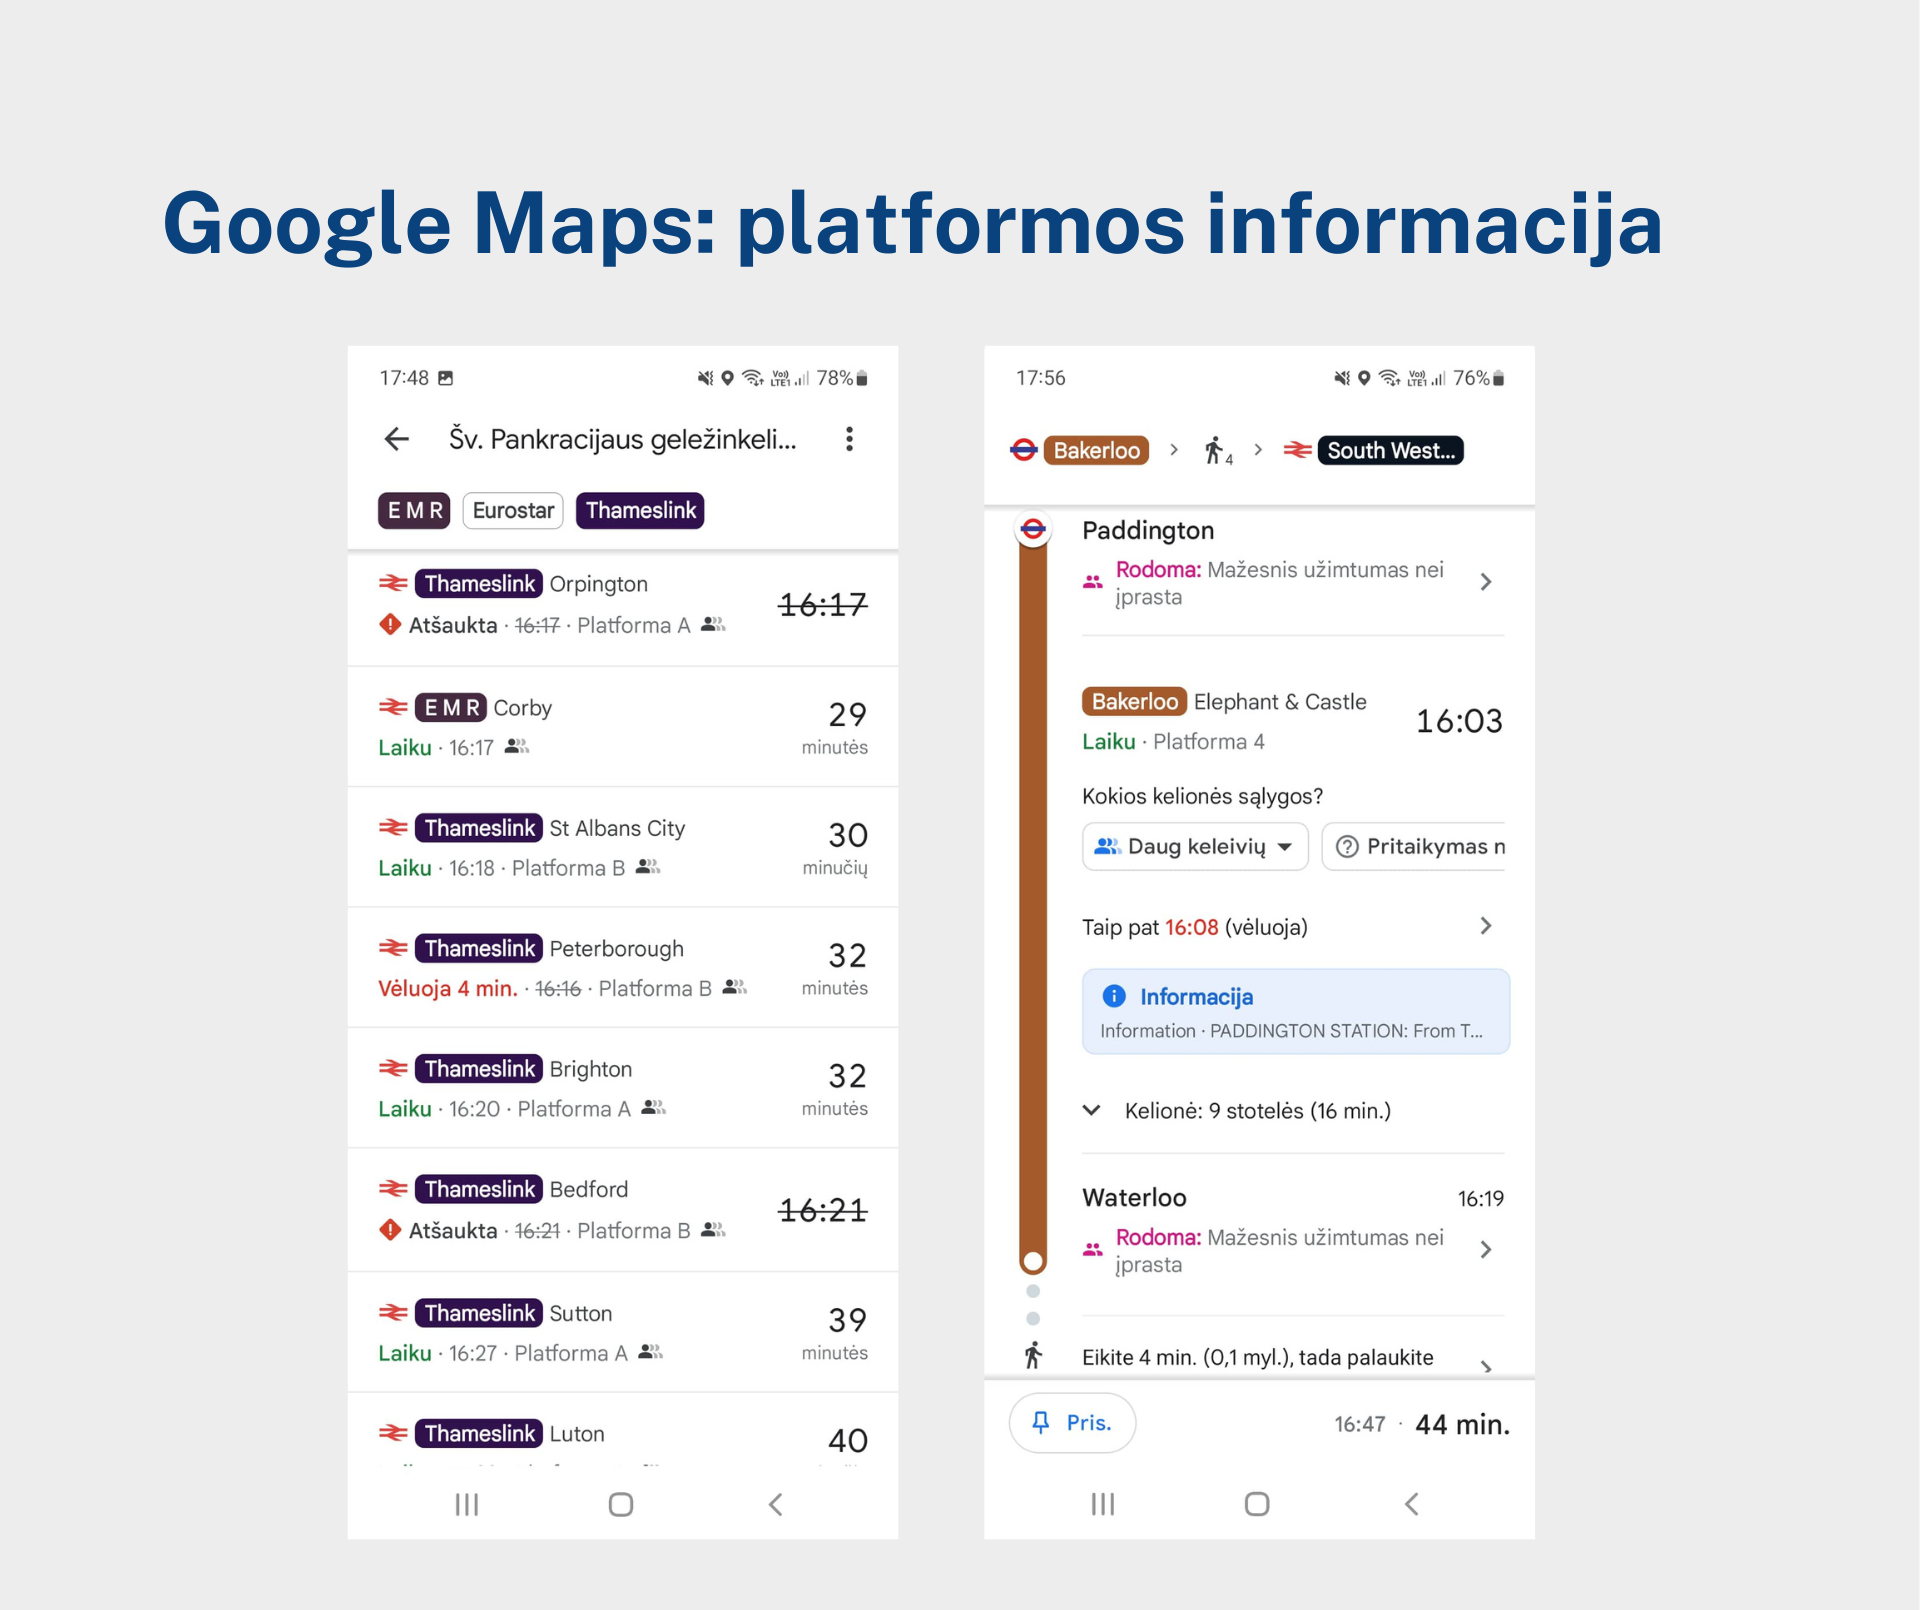 ../_images/google-maps-platform-information.png